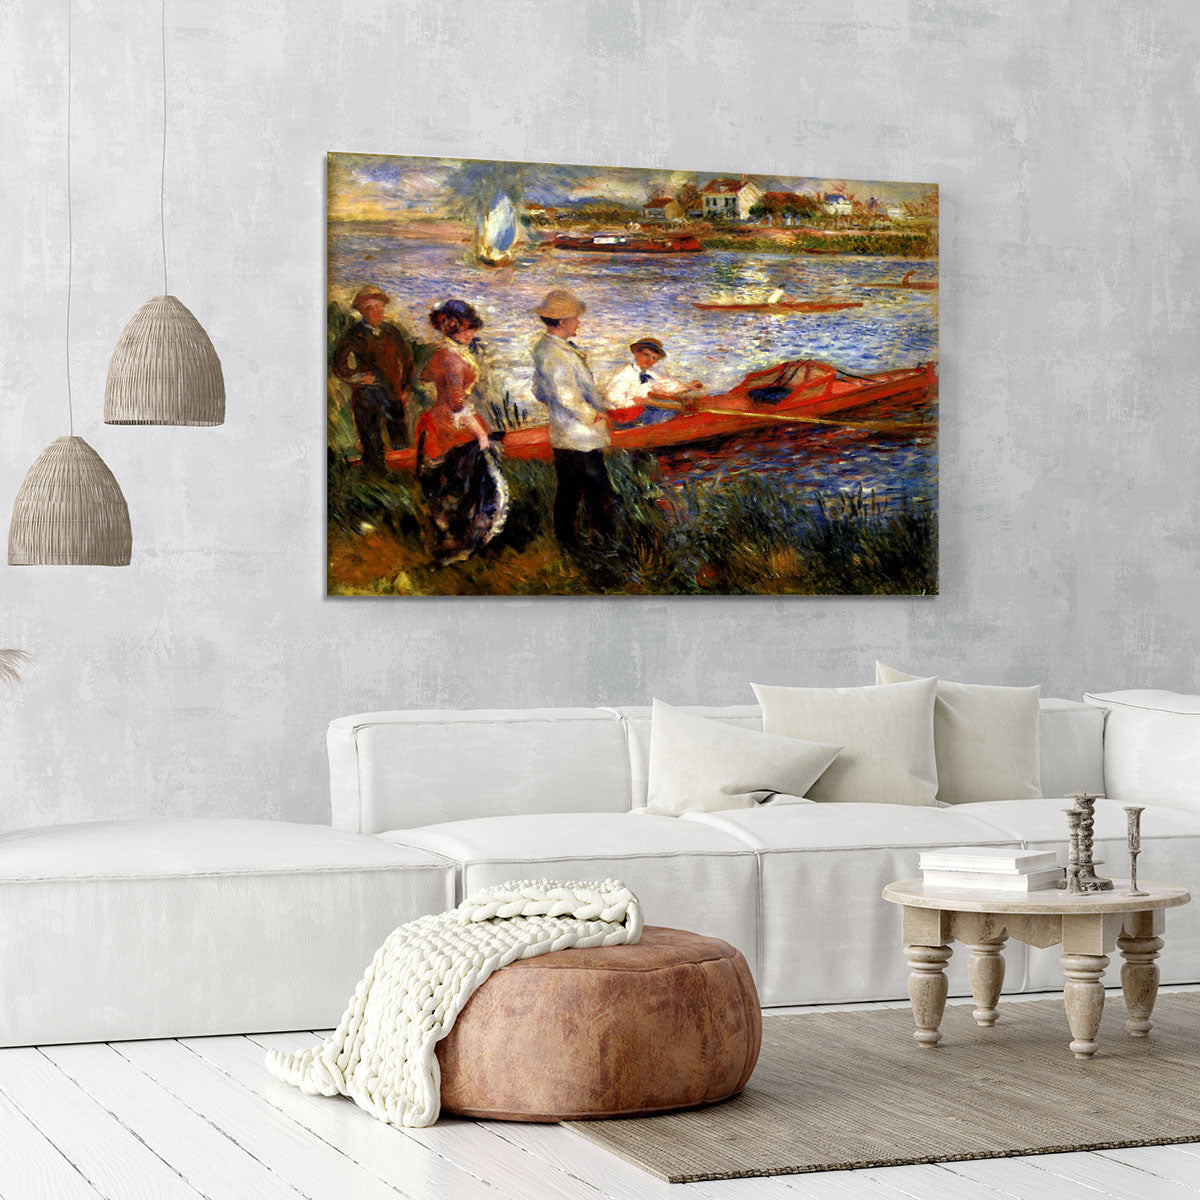 Oarsman of Chatou by Renoir Canvas Print or Poster - Canvas Art Rocks - 6